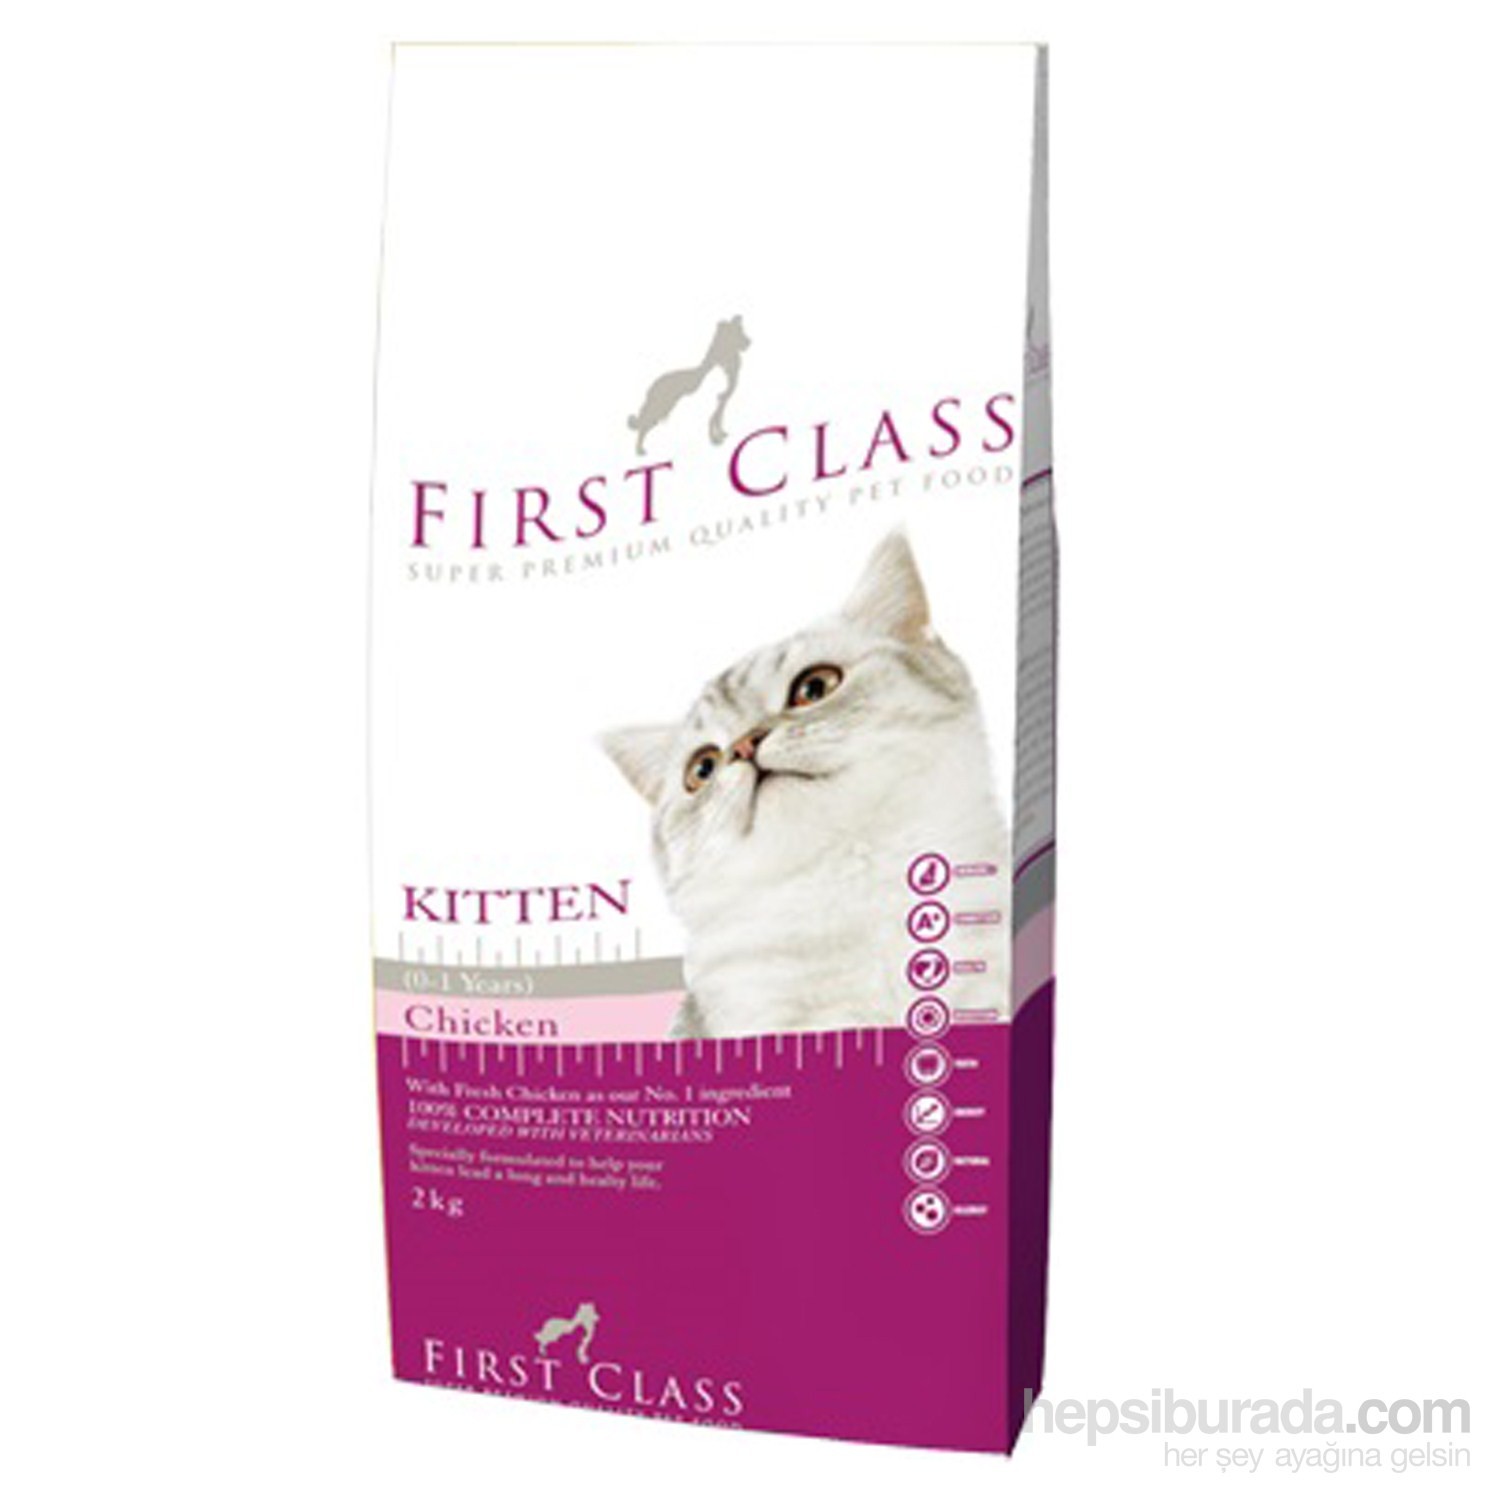 FirstClass Kitten Tavuklu Yavru Kedi Maması 2 Kg Fiyatı